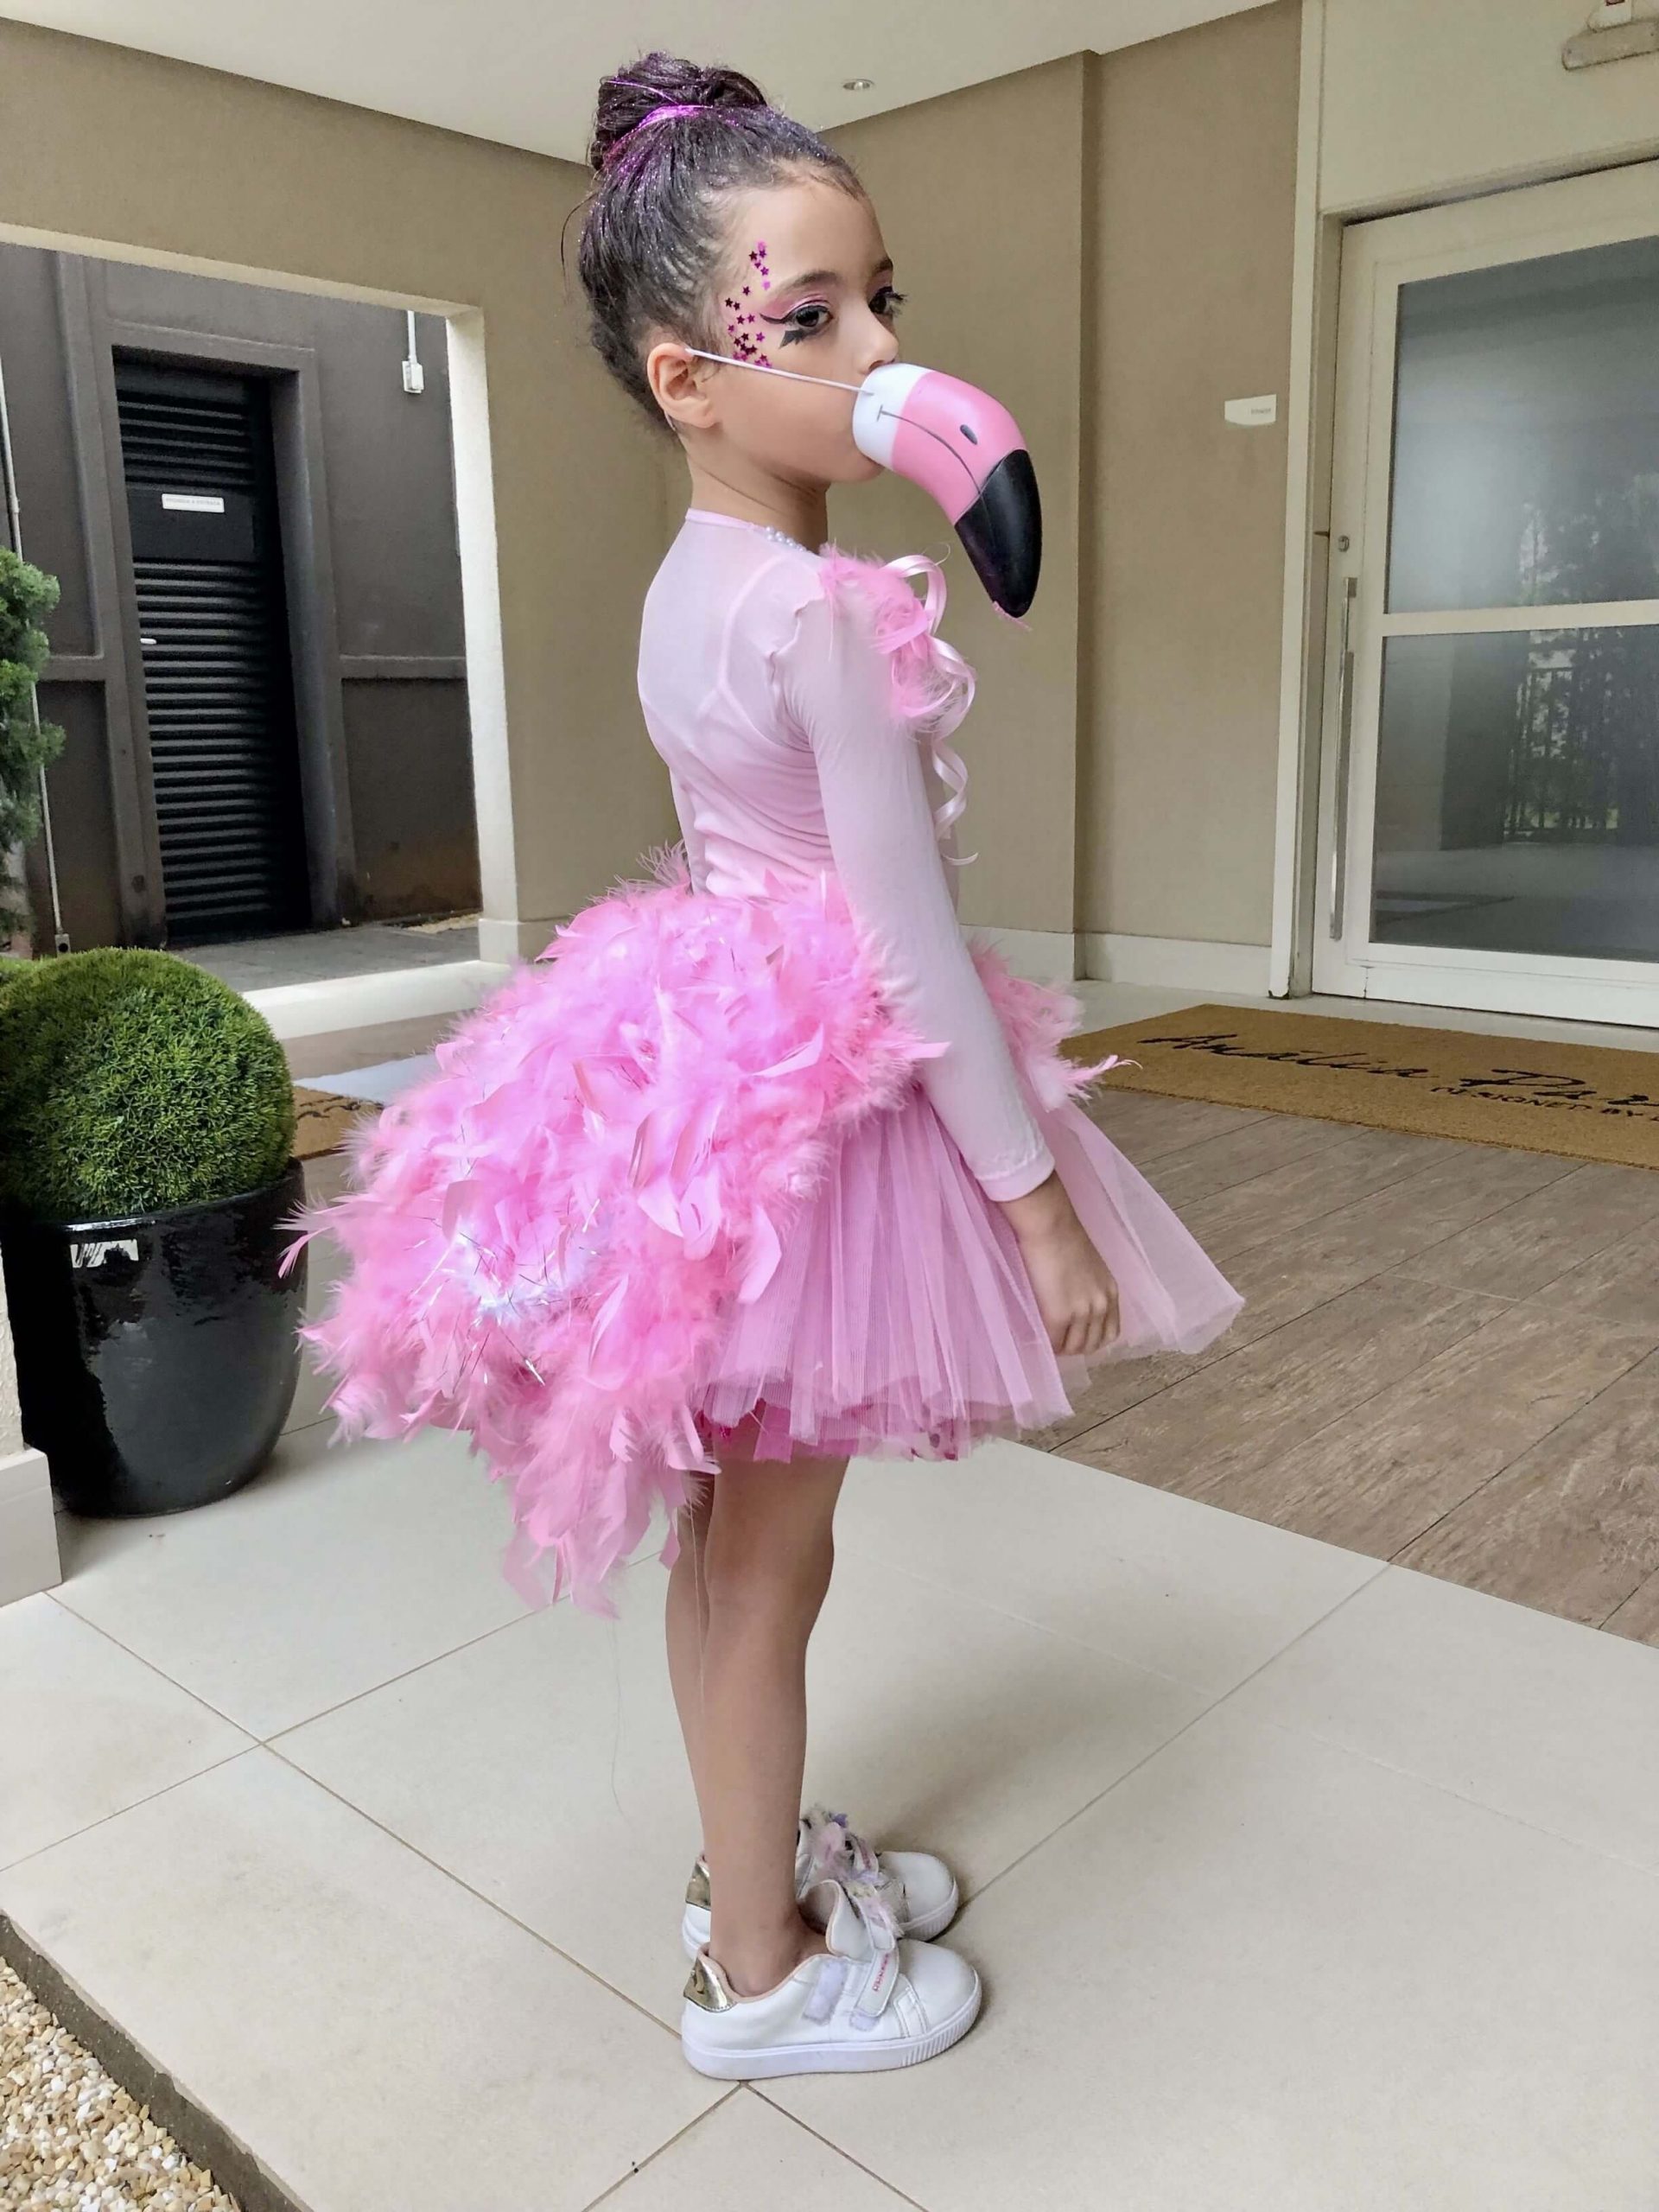 Basic Flamingo Dress For Girls With Beak Mask Flamingo Costume DIY Ideas for Kids 